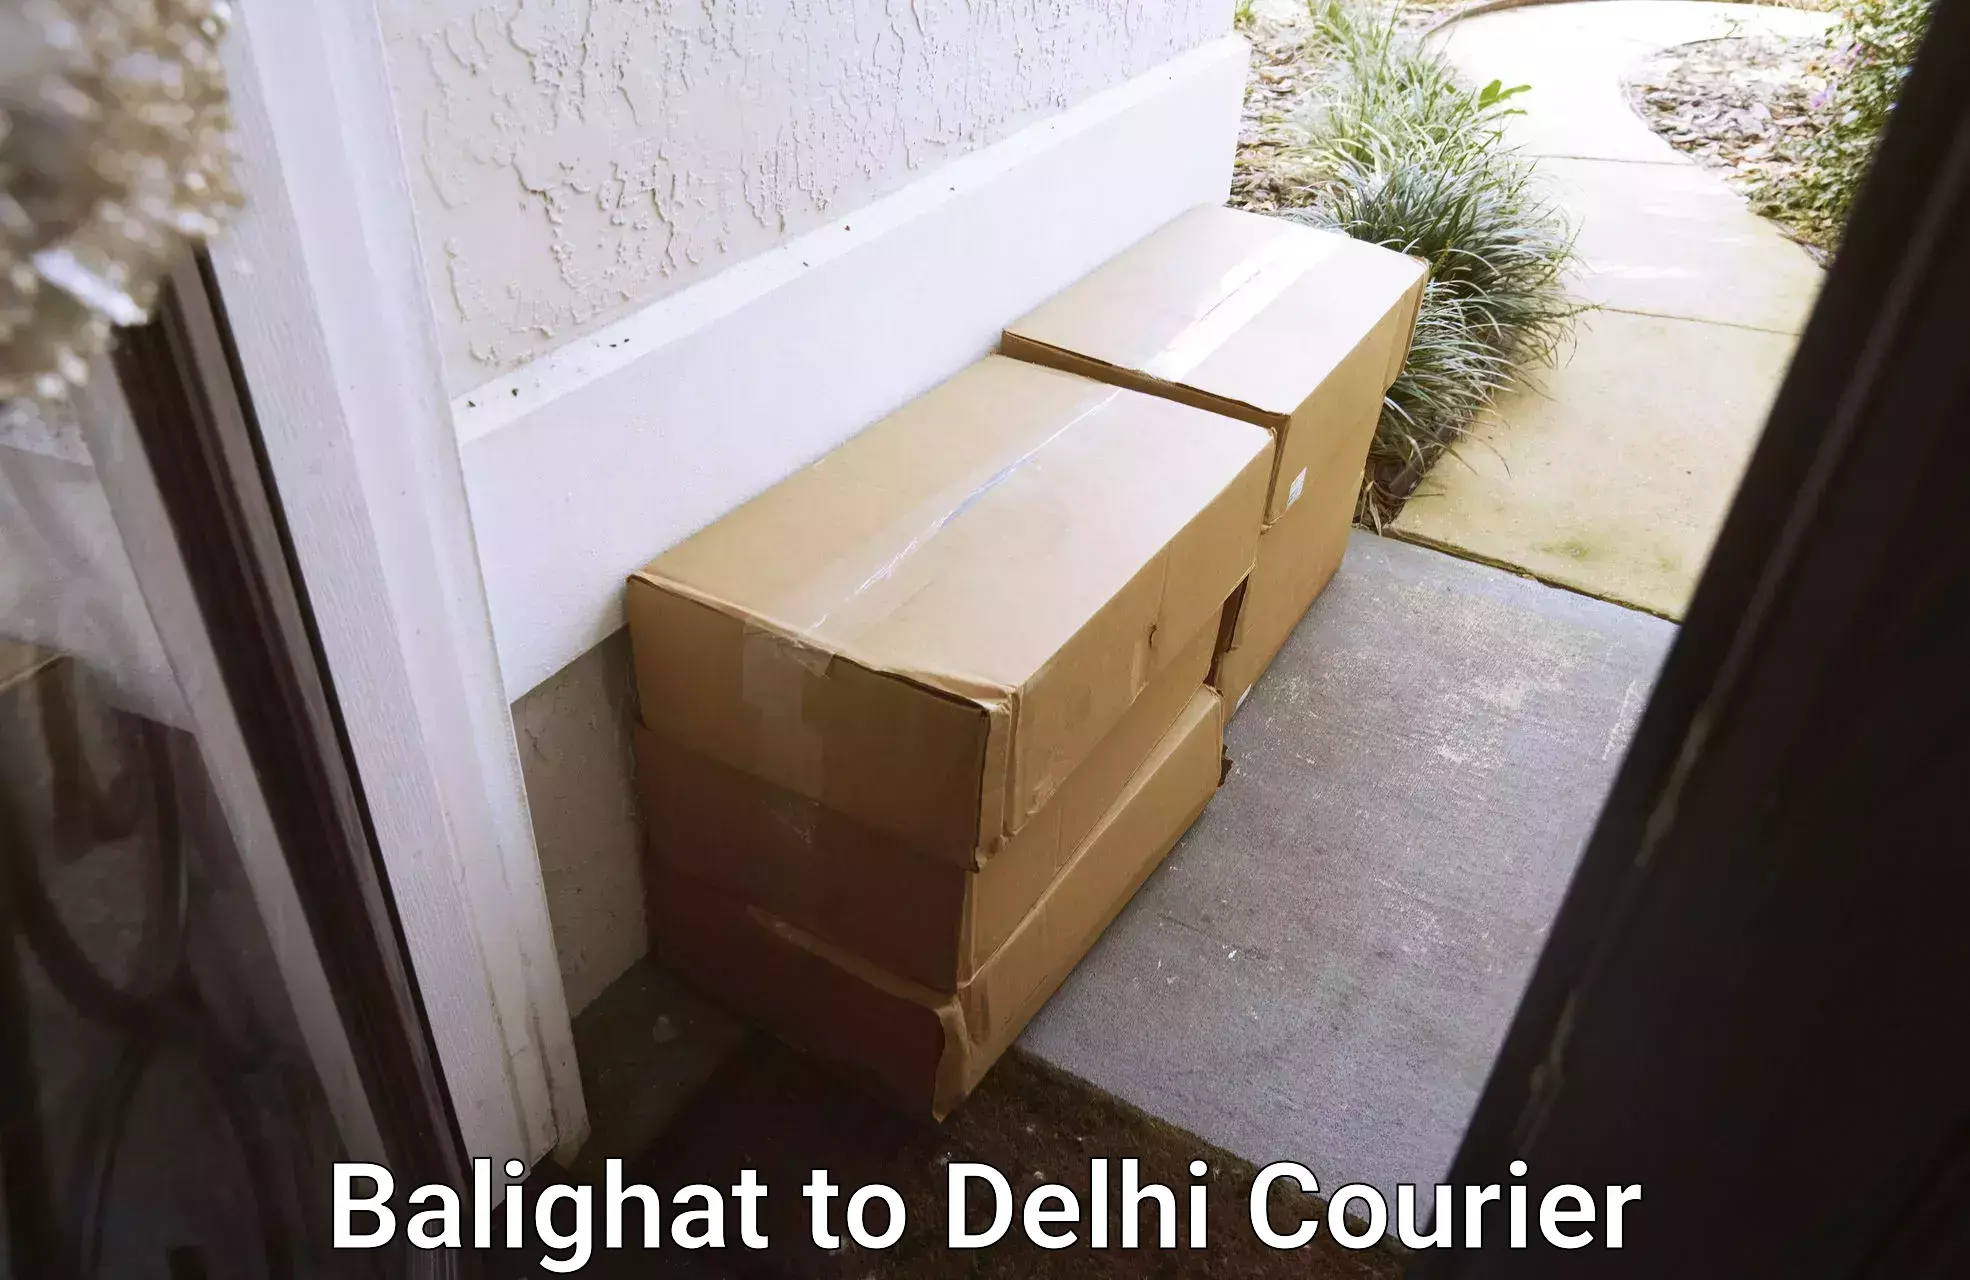 Efficient order fulfillment Balighat to IIT Delhi